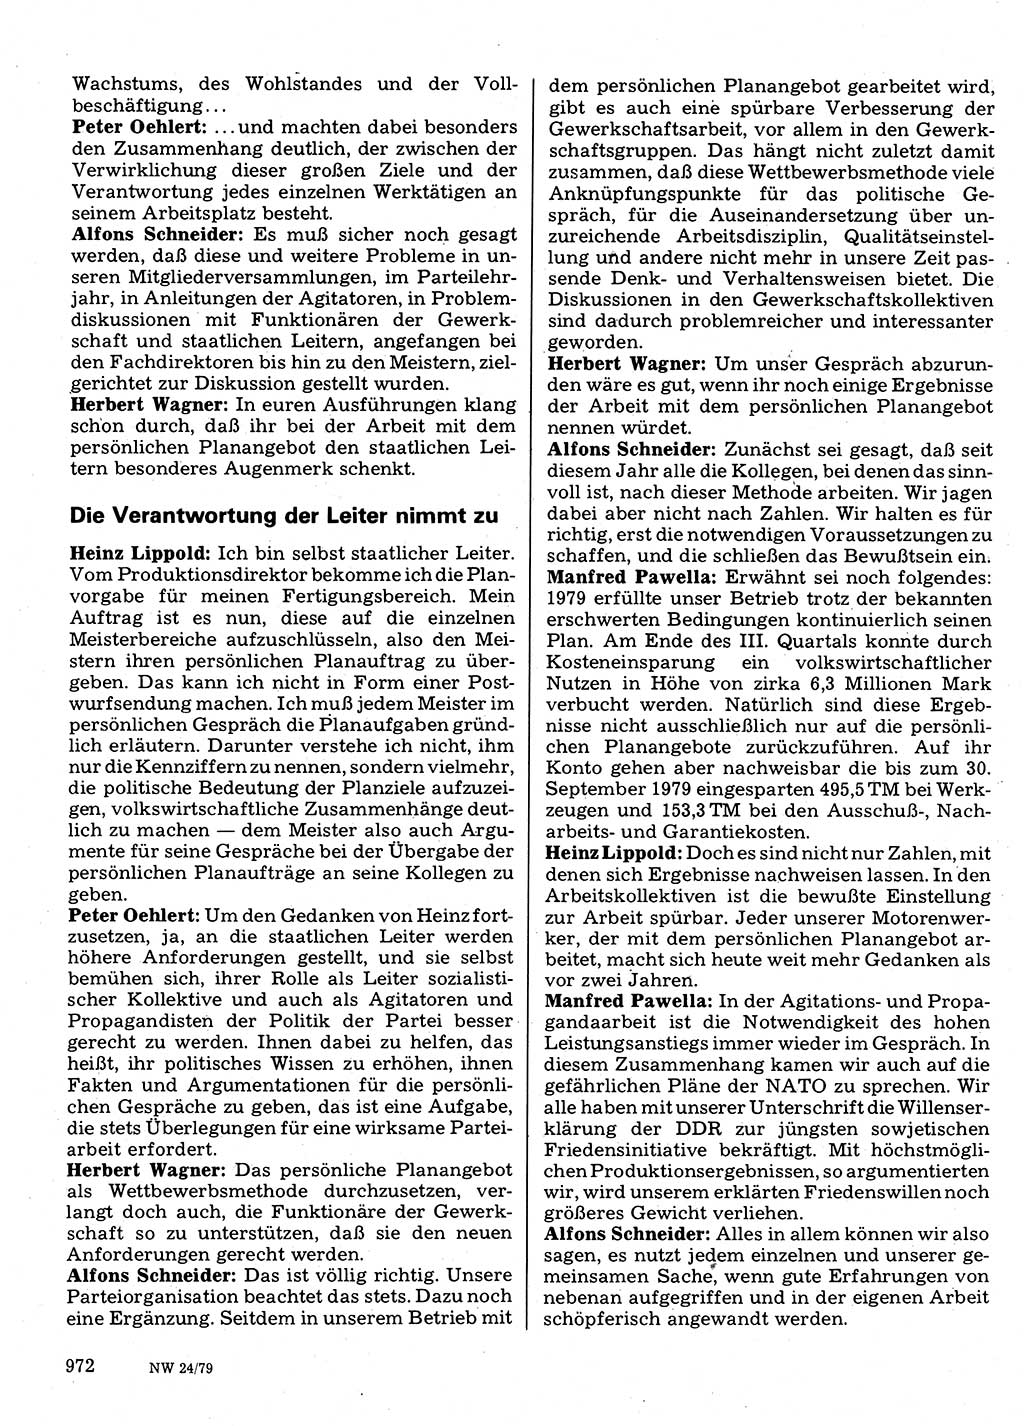 Neuer Weg (NW), Organ des Zentralkomitees (ZK) der SED (Sozialistische Einheitspartei Deutschlands) für Fragen des Parteilebens, 34. Jahrgang [Deutsche Demokratische Republik (DDR)] 1979, Seite 972 (NW ZK SED DDR 1979, S. 972)